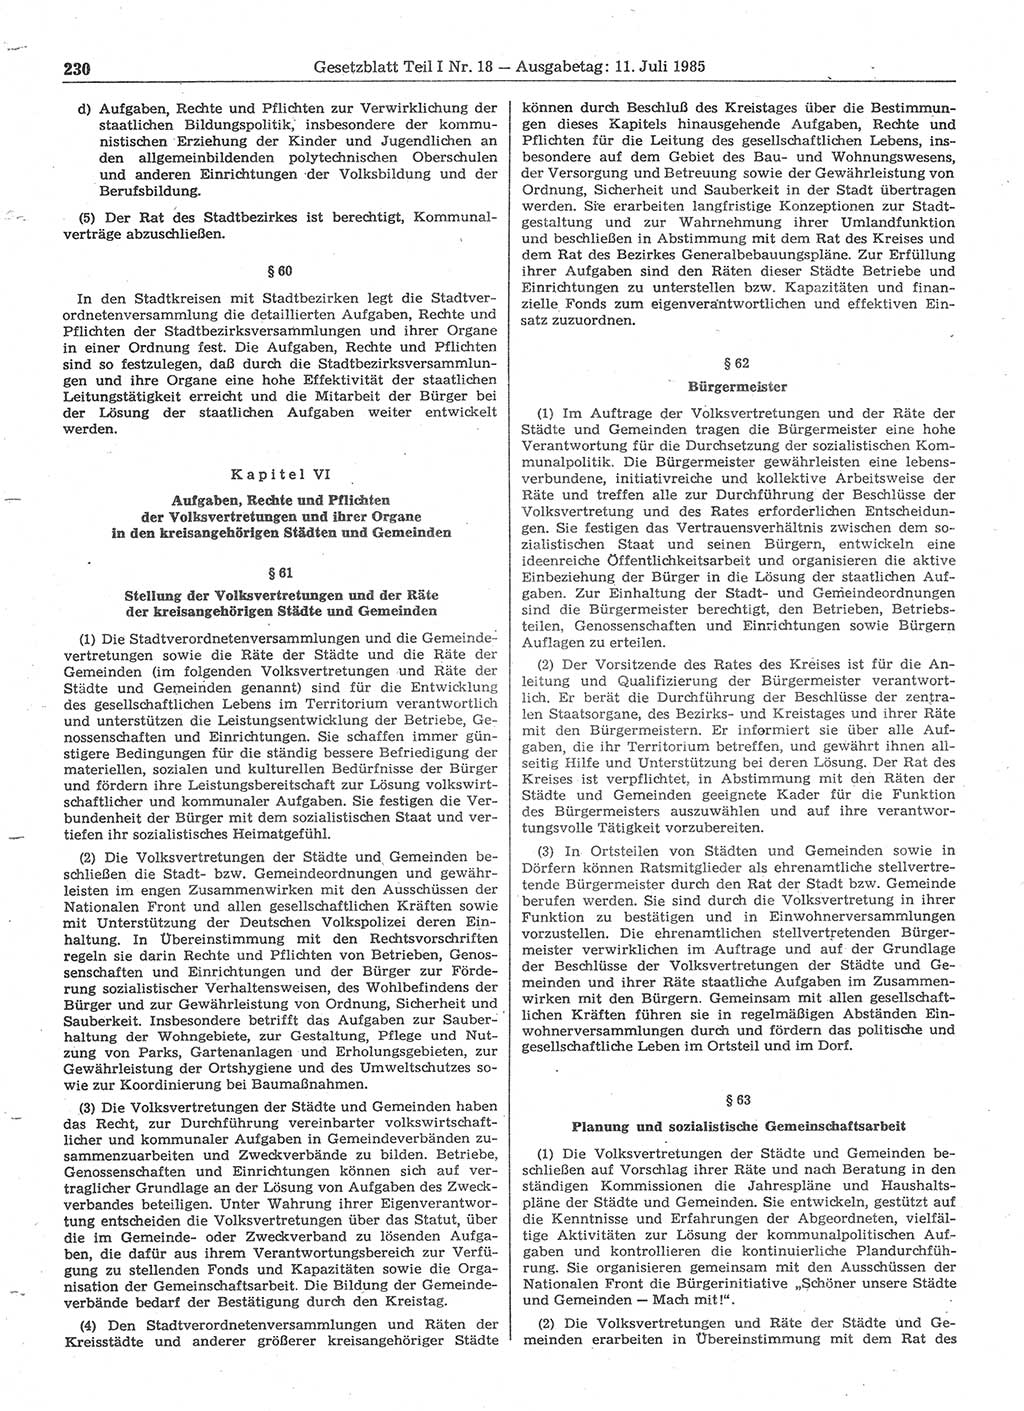 Gesetzblatt (GBl.) der Deutschen Demokratischen Republik (DDR) Teil Ⅰ 1985, Seite 230 (GBl. DDR Ⅰ 1985, S. 230)